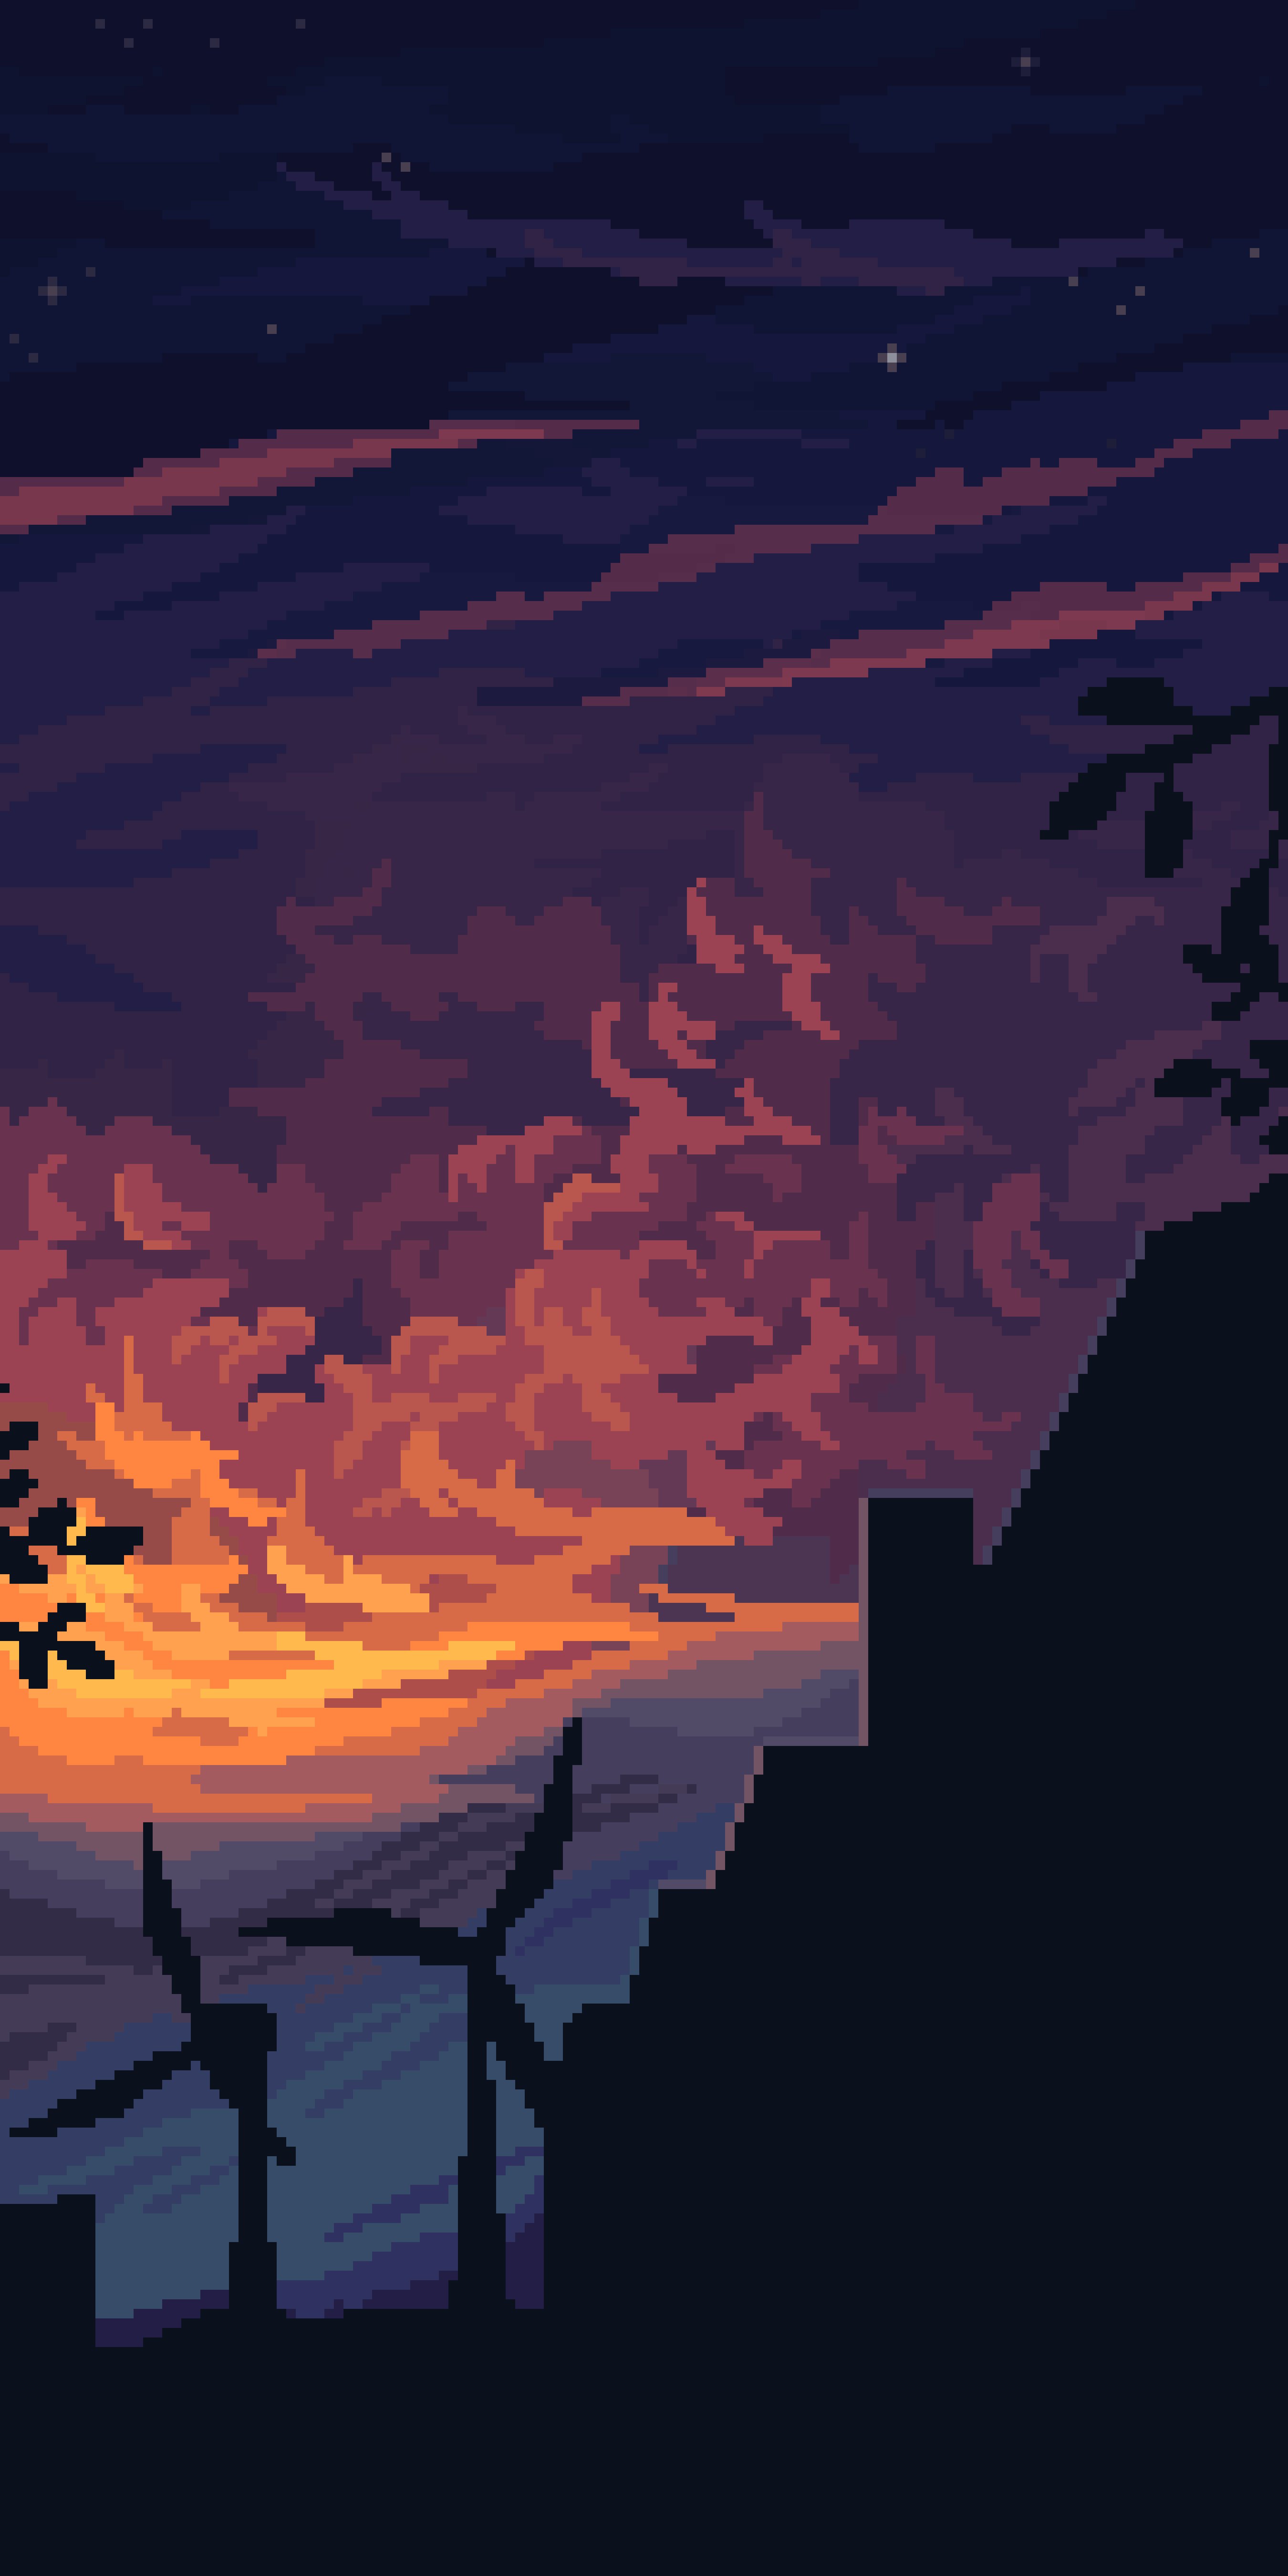 Pixel art of a sunset over a city - Pixel art